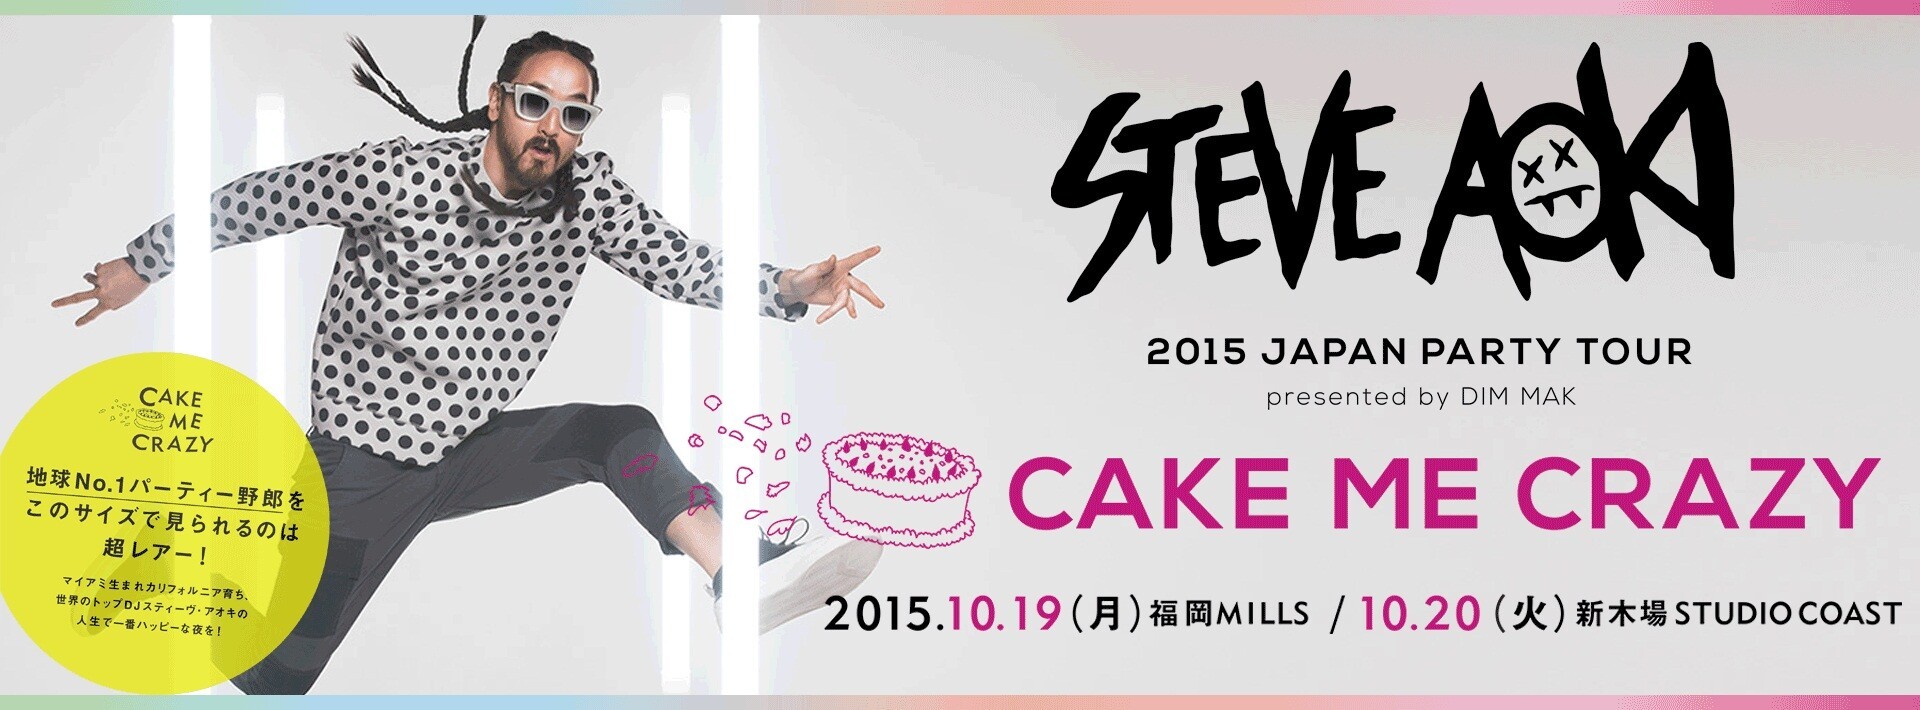 Iflyer Steve Aokiのジャパンツアー Cake Me Crazy 開催決定